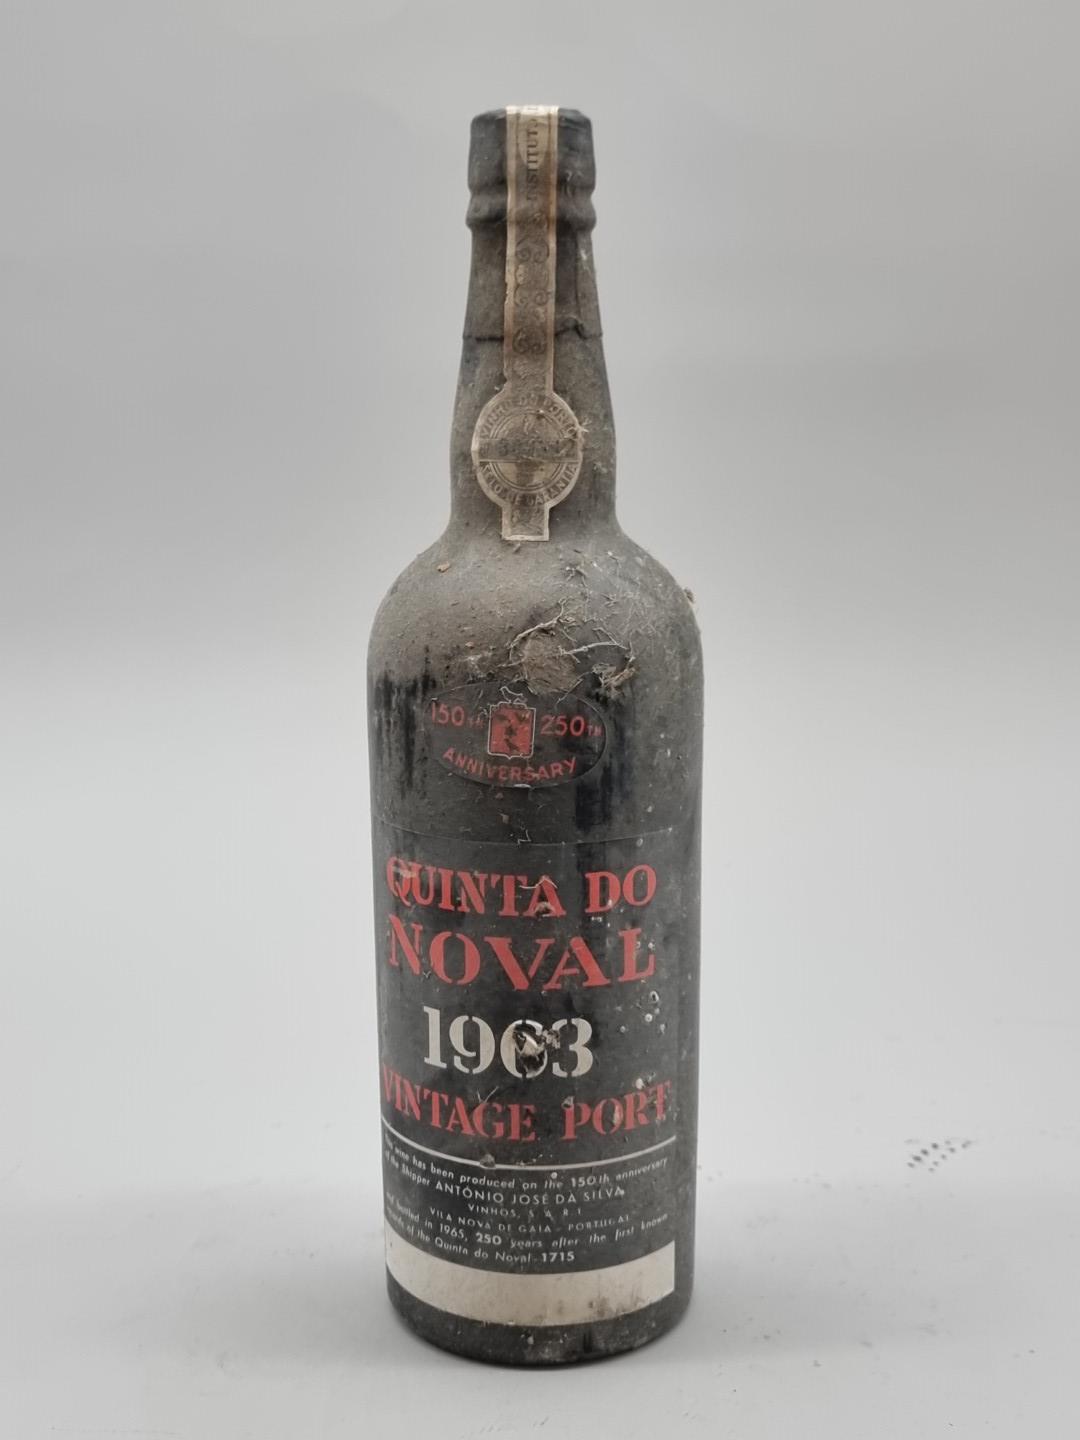 A bottle of Quinta Do Noval 1963 Vintage Port.